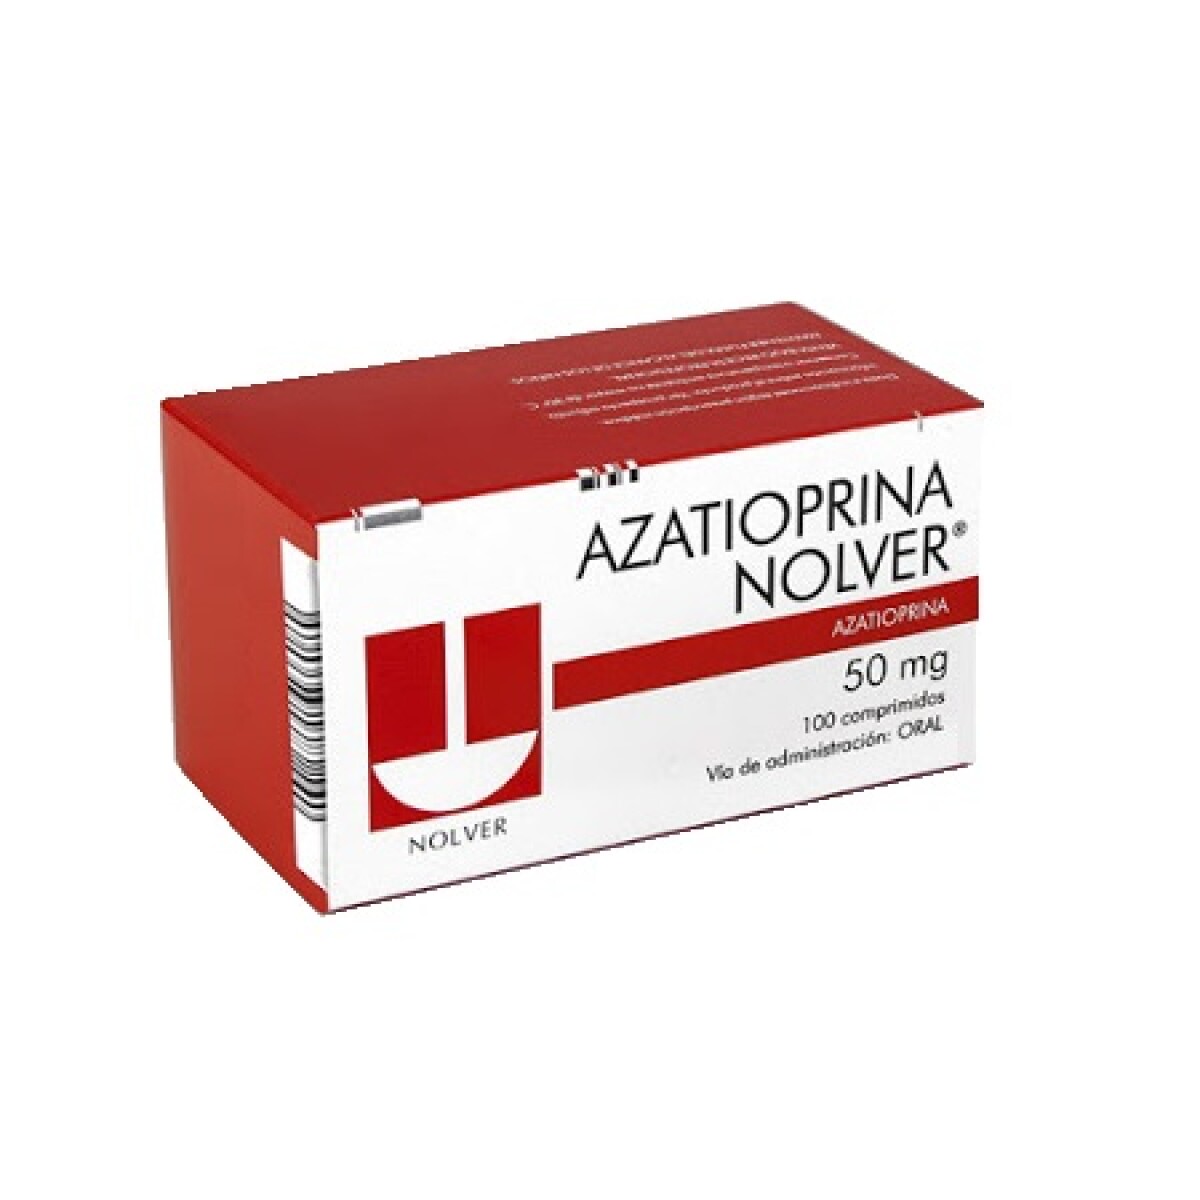 Azatioprina Nolver 50 Mg. 100 Comp. 